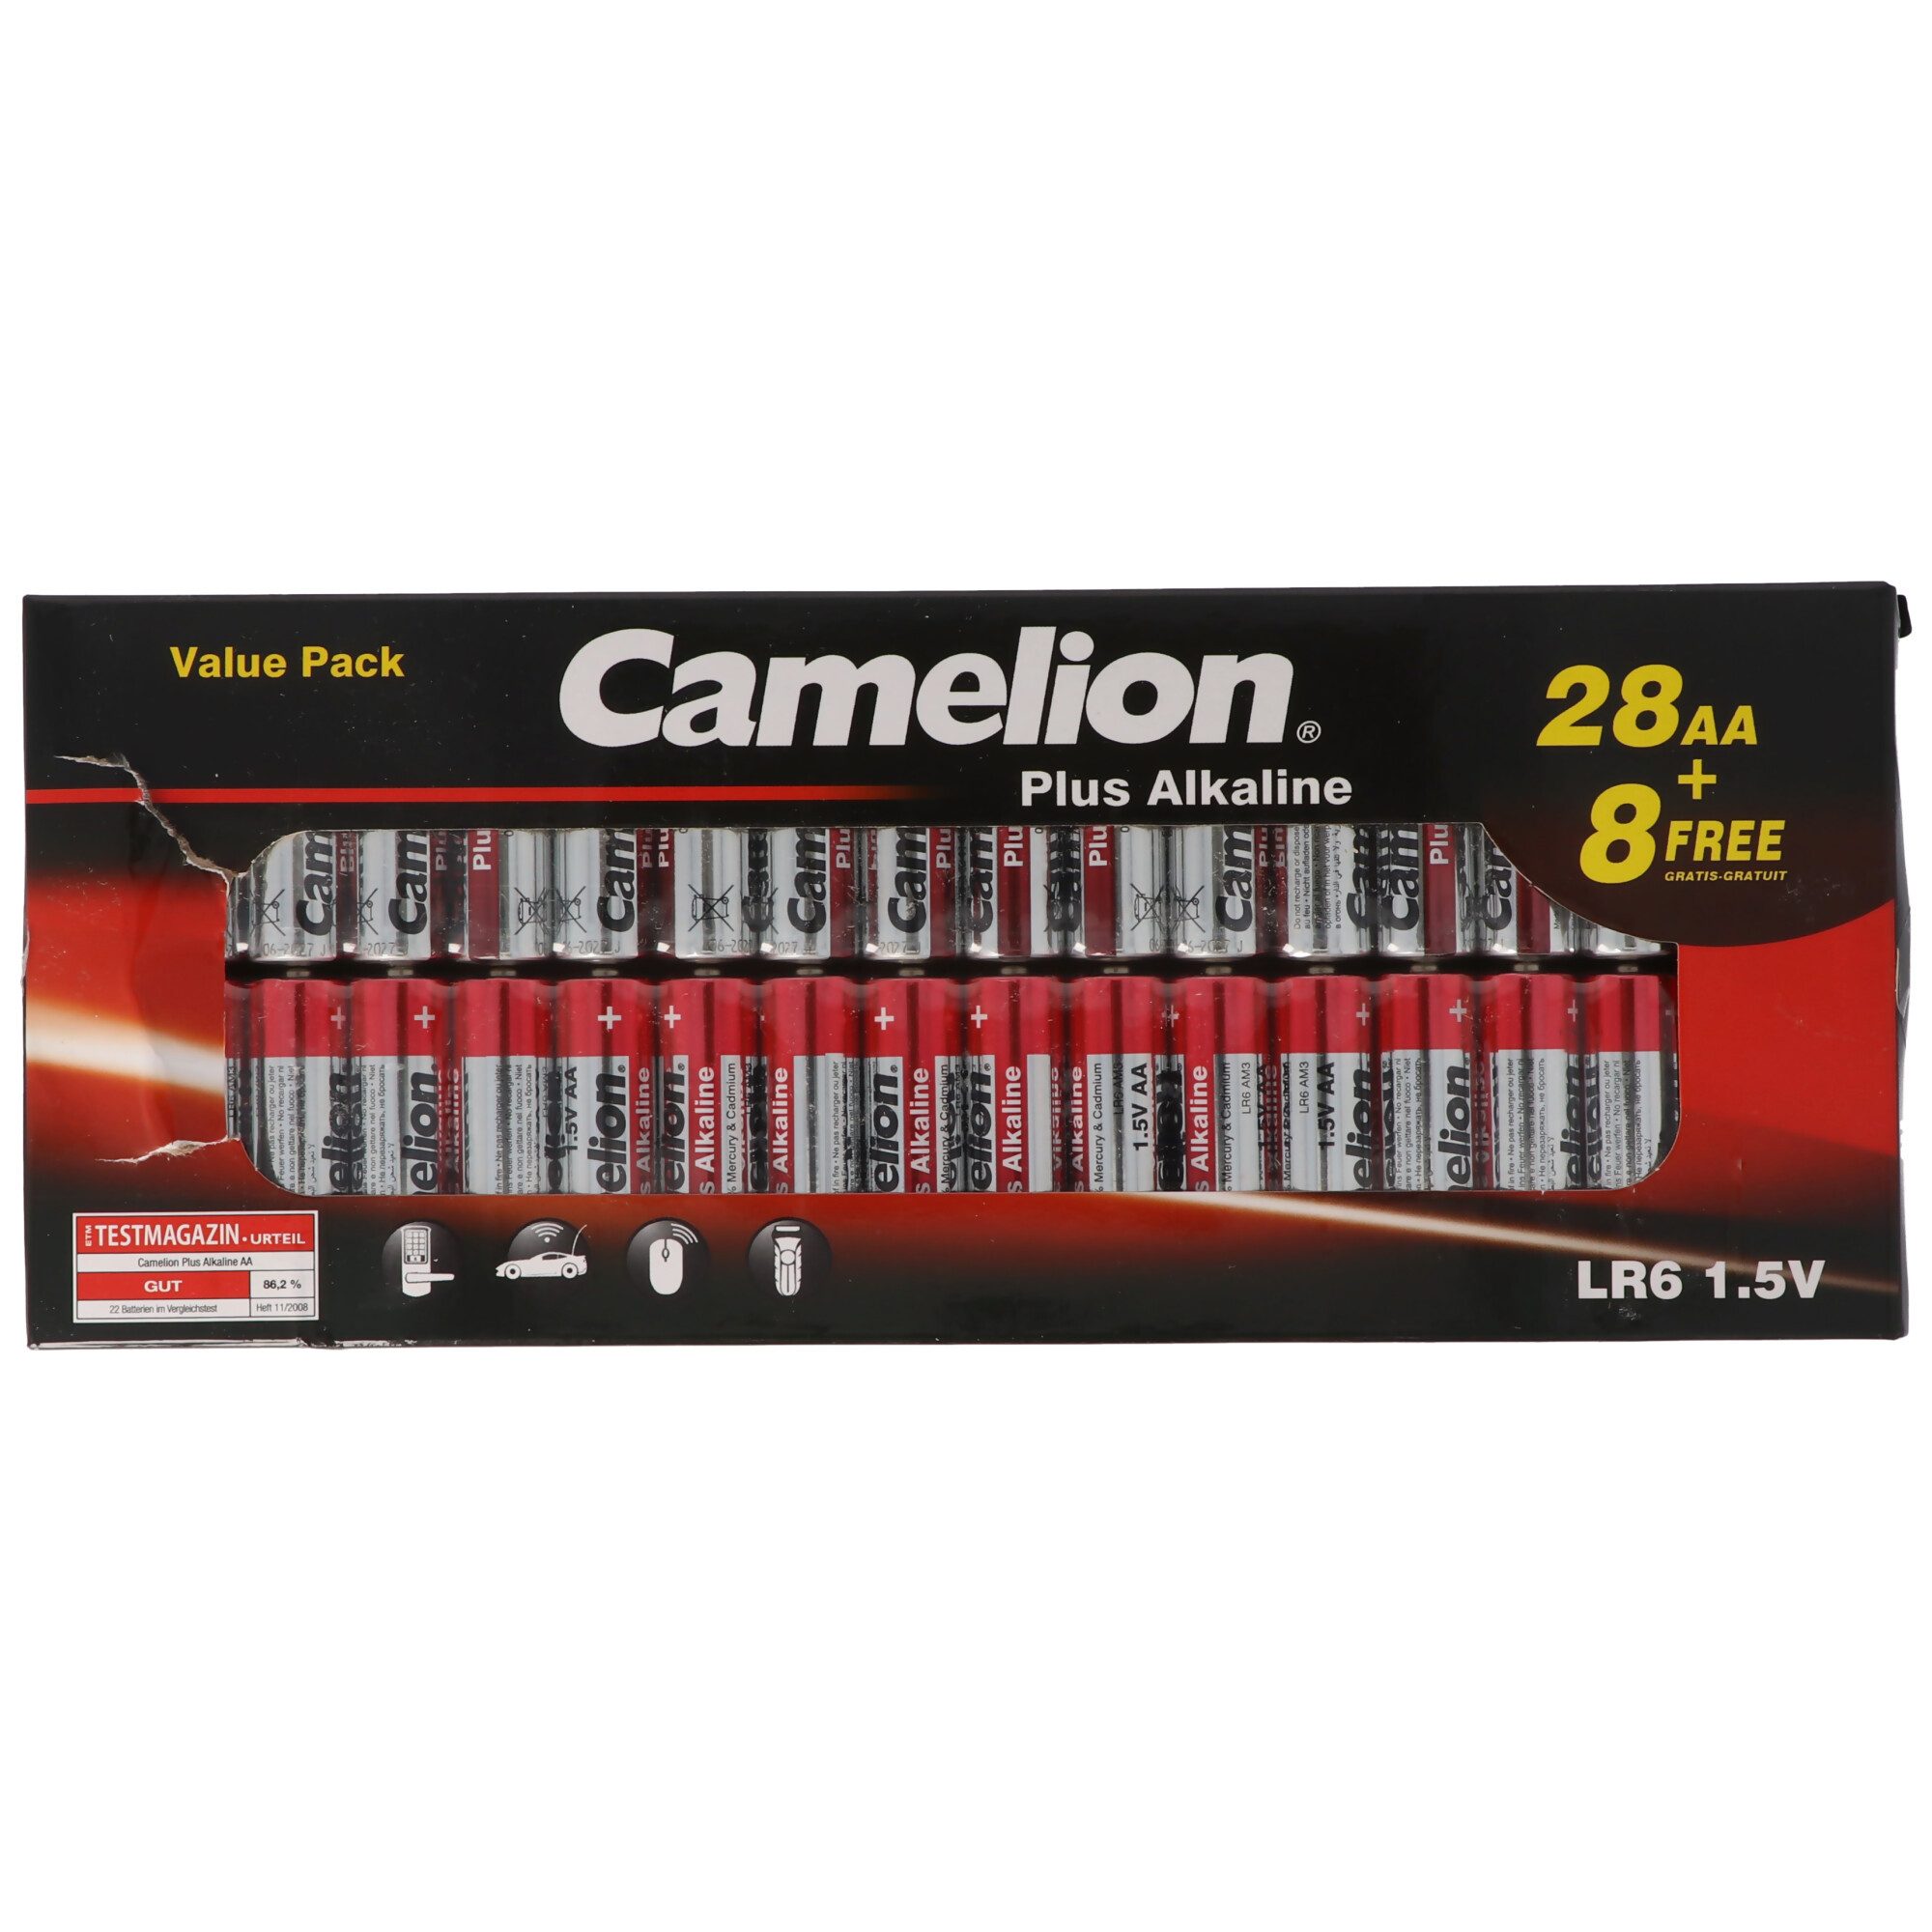 Camelion 28+8 gratis, Sparpack Camelion Plus Alkaline Mignon Batterien, AA, LR Batterie